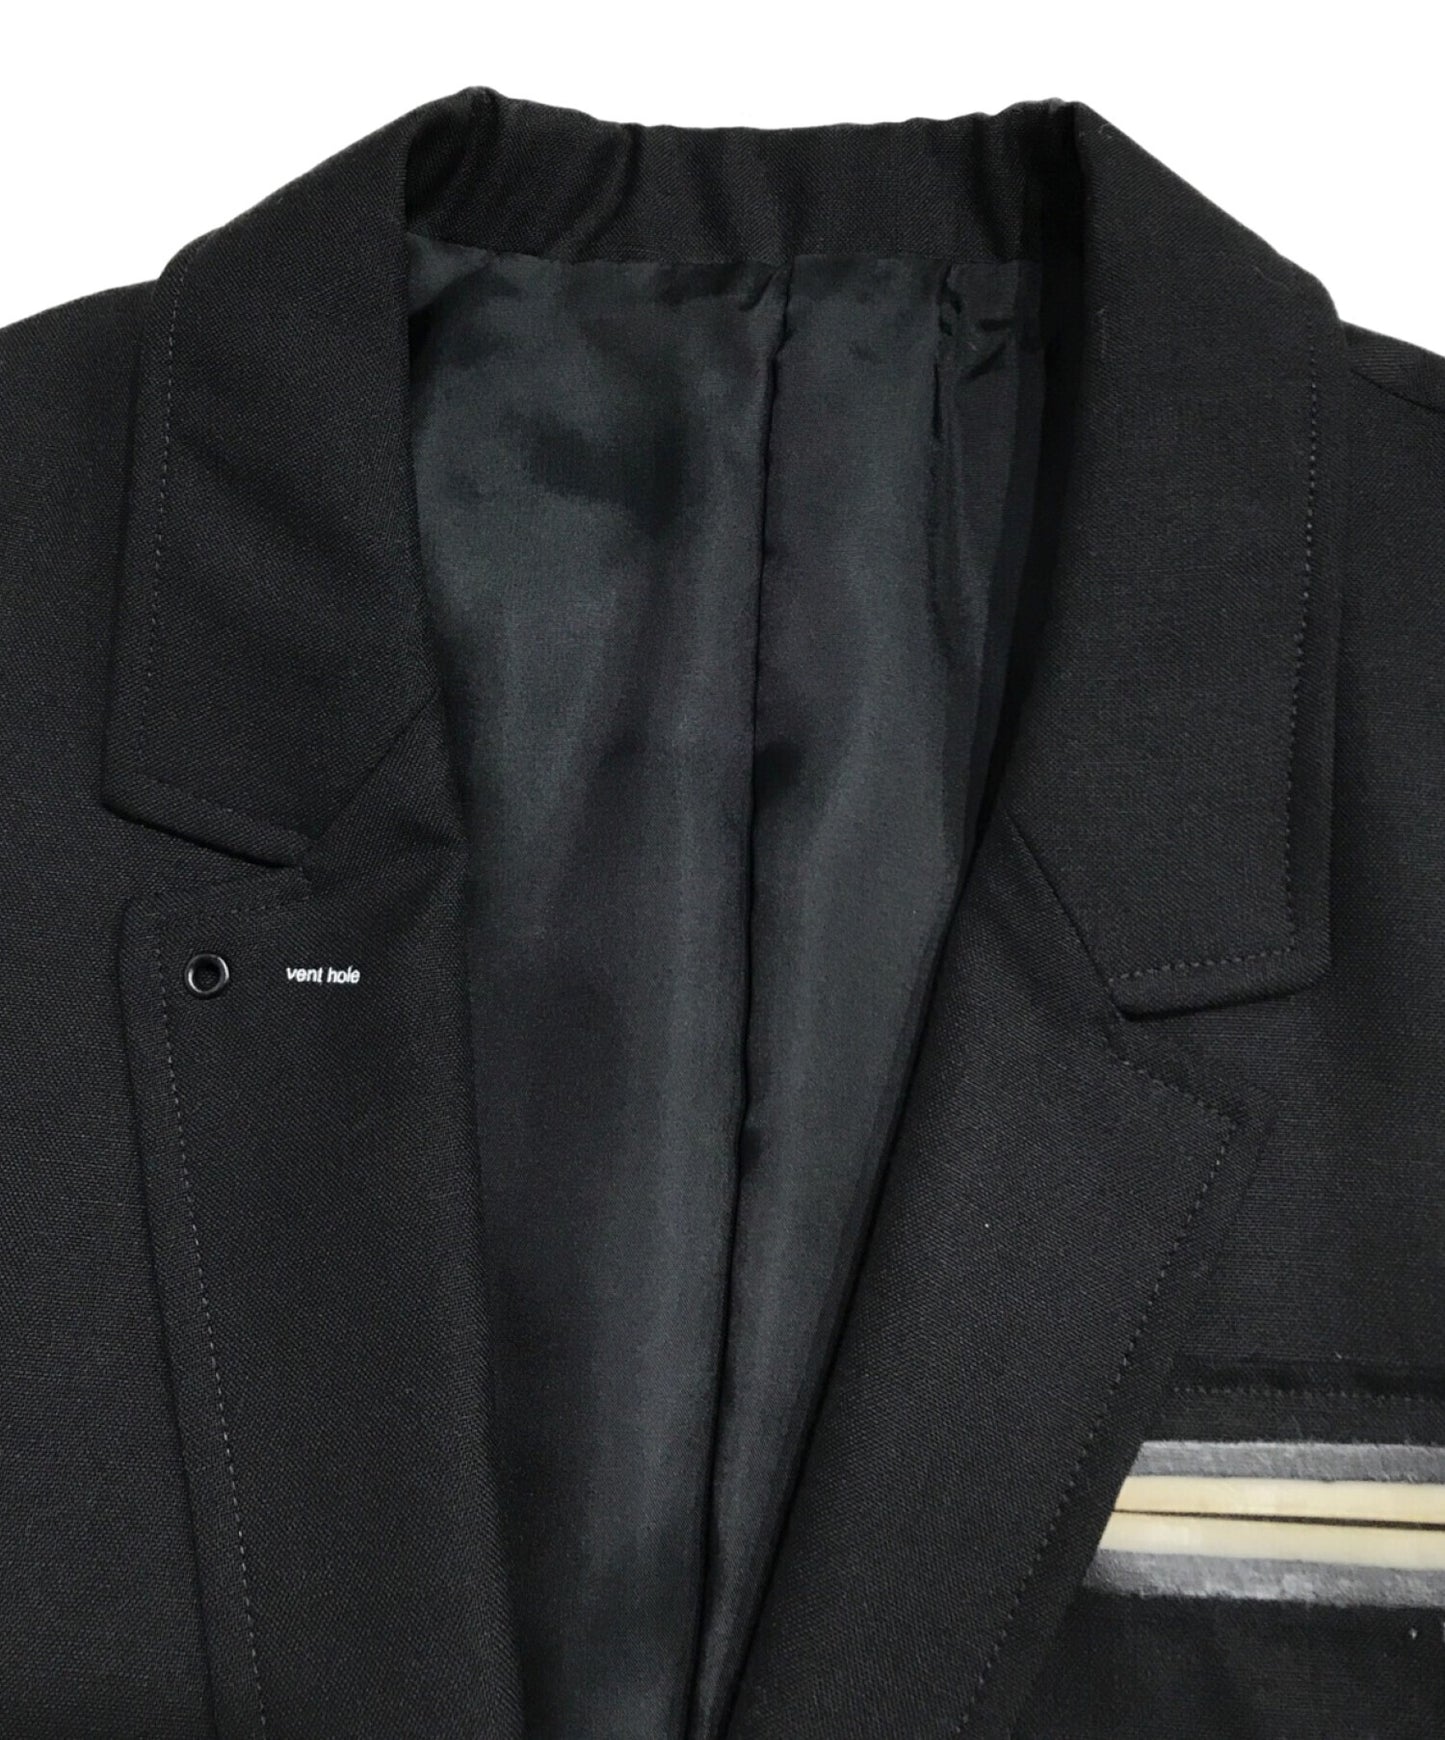 臥底2B量身定制的夾克帶袖子切口E1102